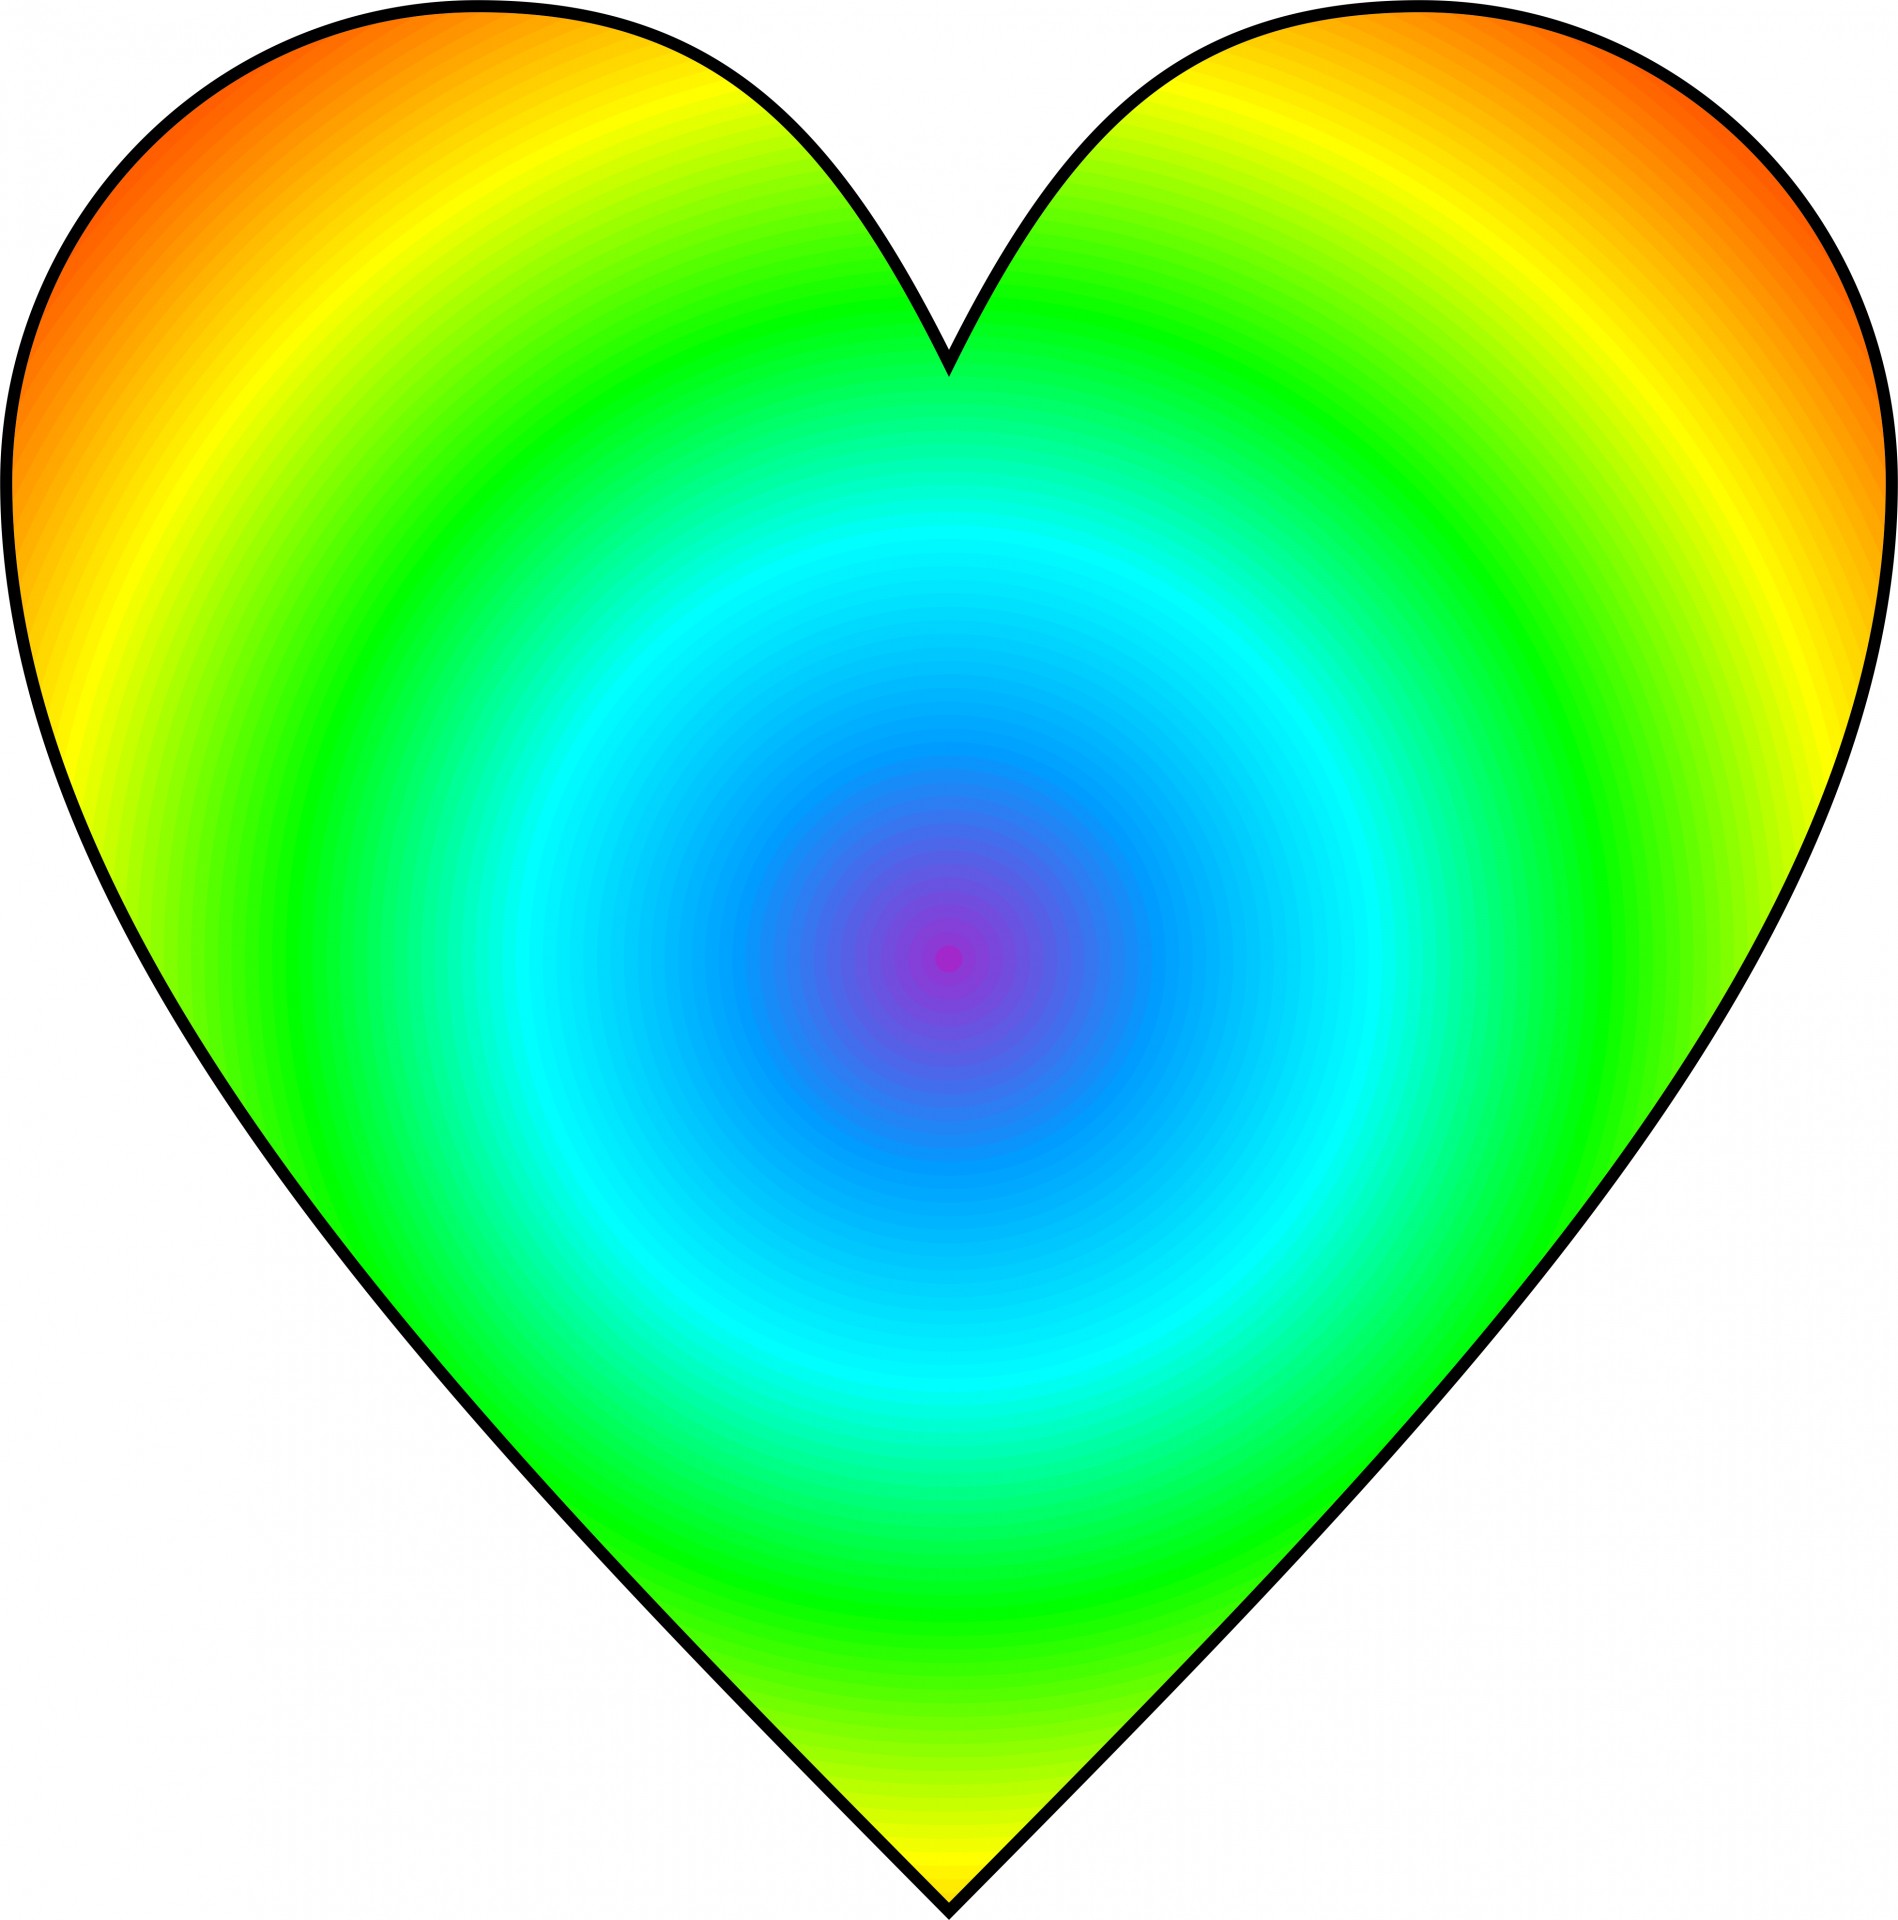 radial rainbow heart free photo